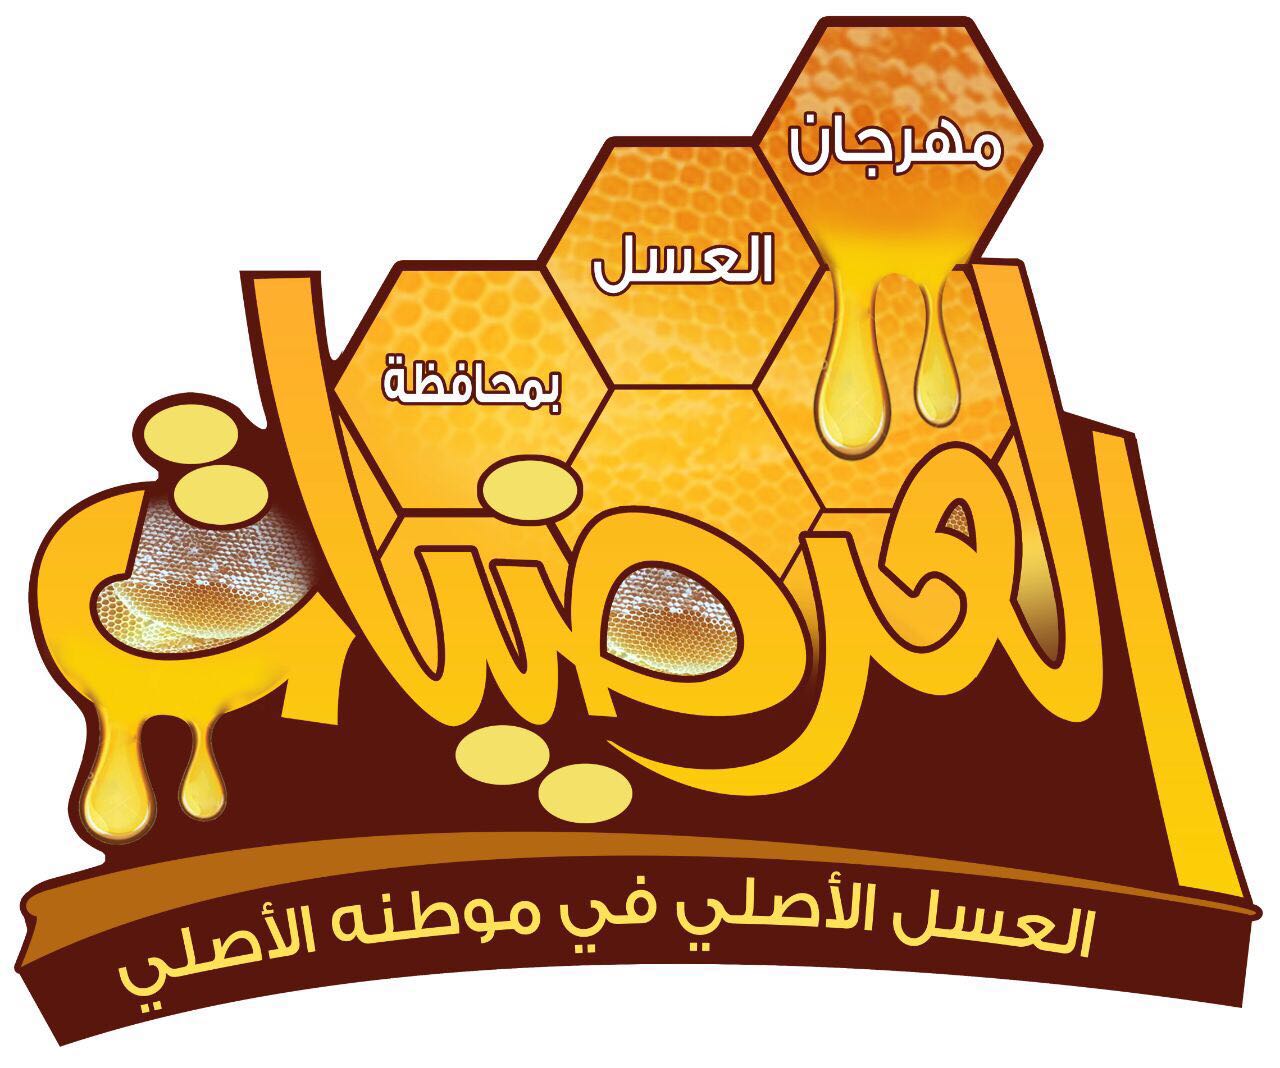 مهرجان عسل بالعُرضيات يجذب أكثر من 50 وسيلة إعلاميّة لتغطيته